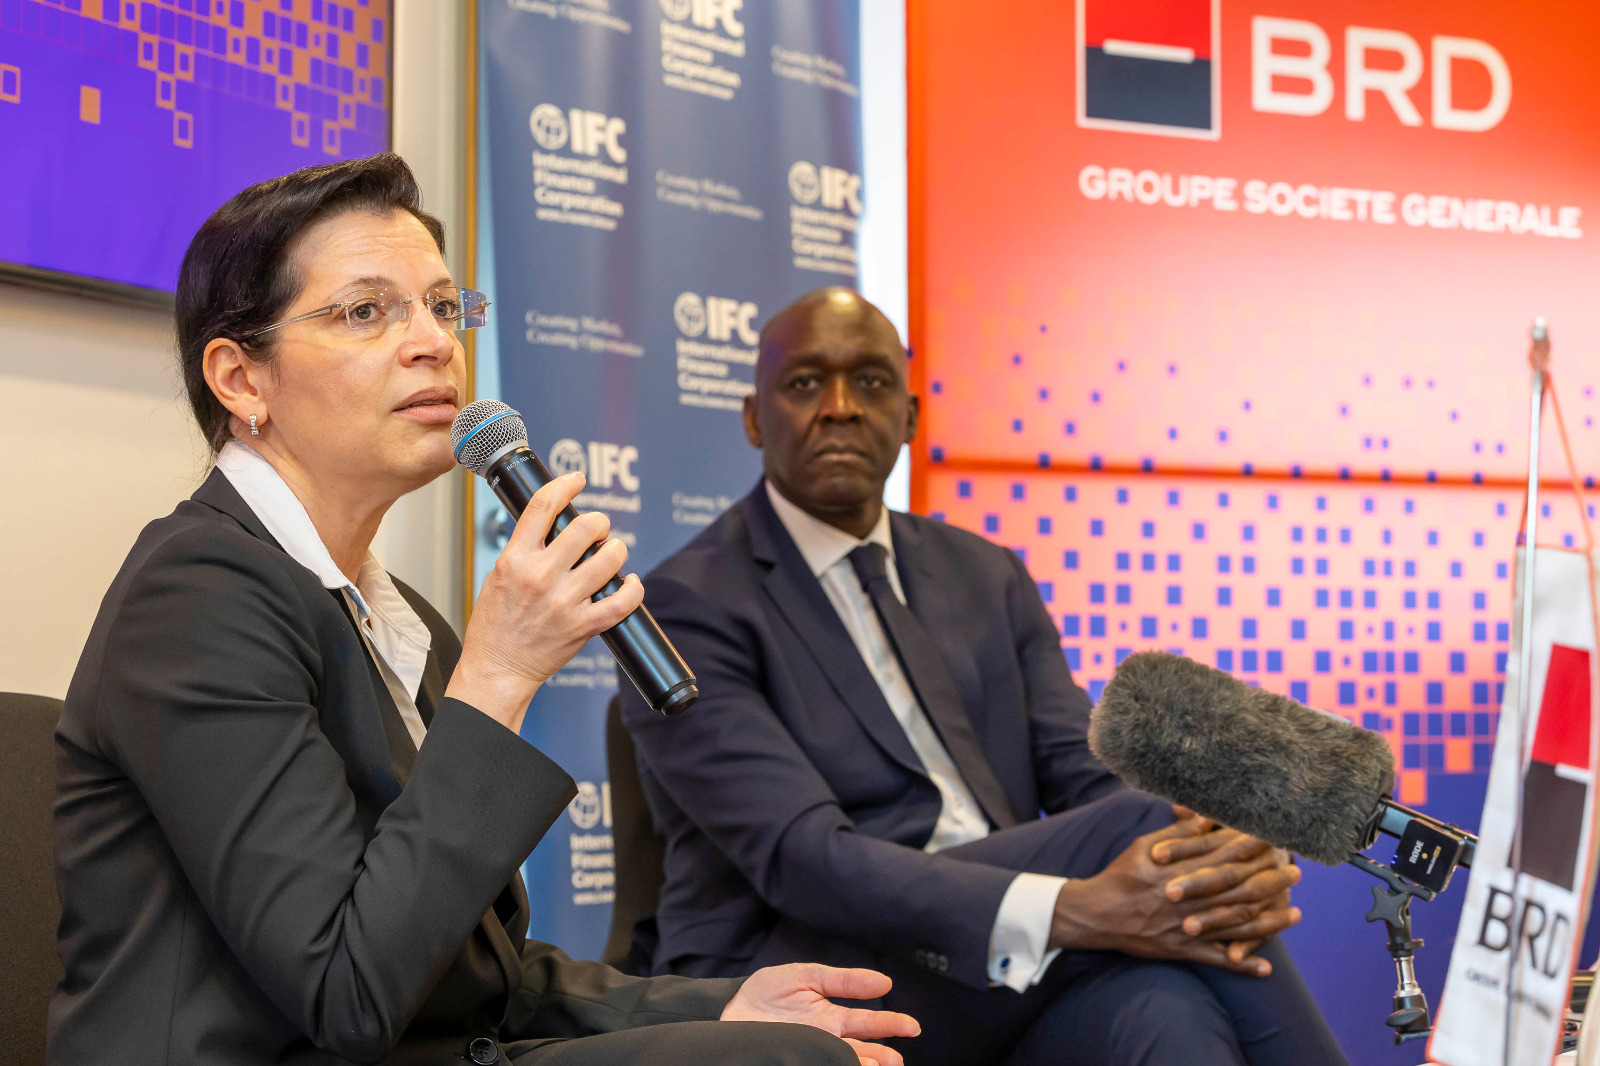 Maria Rousseva, CEO-ul BRD Groupe Societe Generale: BRD Societe Generale şi IFC, membră a Grupului Băncii Mondiale au încheiat un parteneriat prin care IFC va furniza o garanţie de risc pentru portofoliul BRD de până la 700 mil. euro. Capitalul deblocat se va îndrepta către finanţari sustenabile